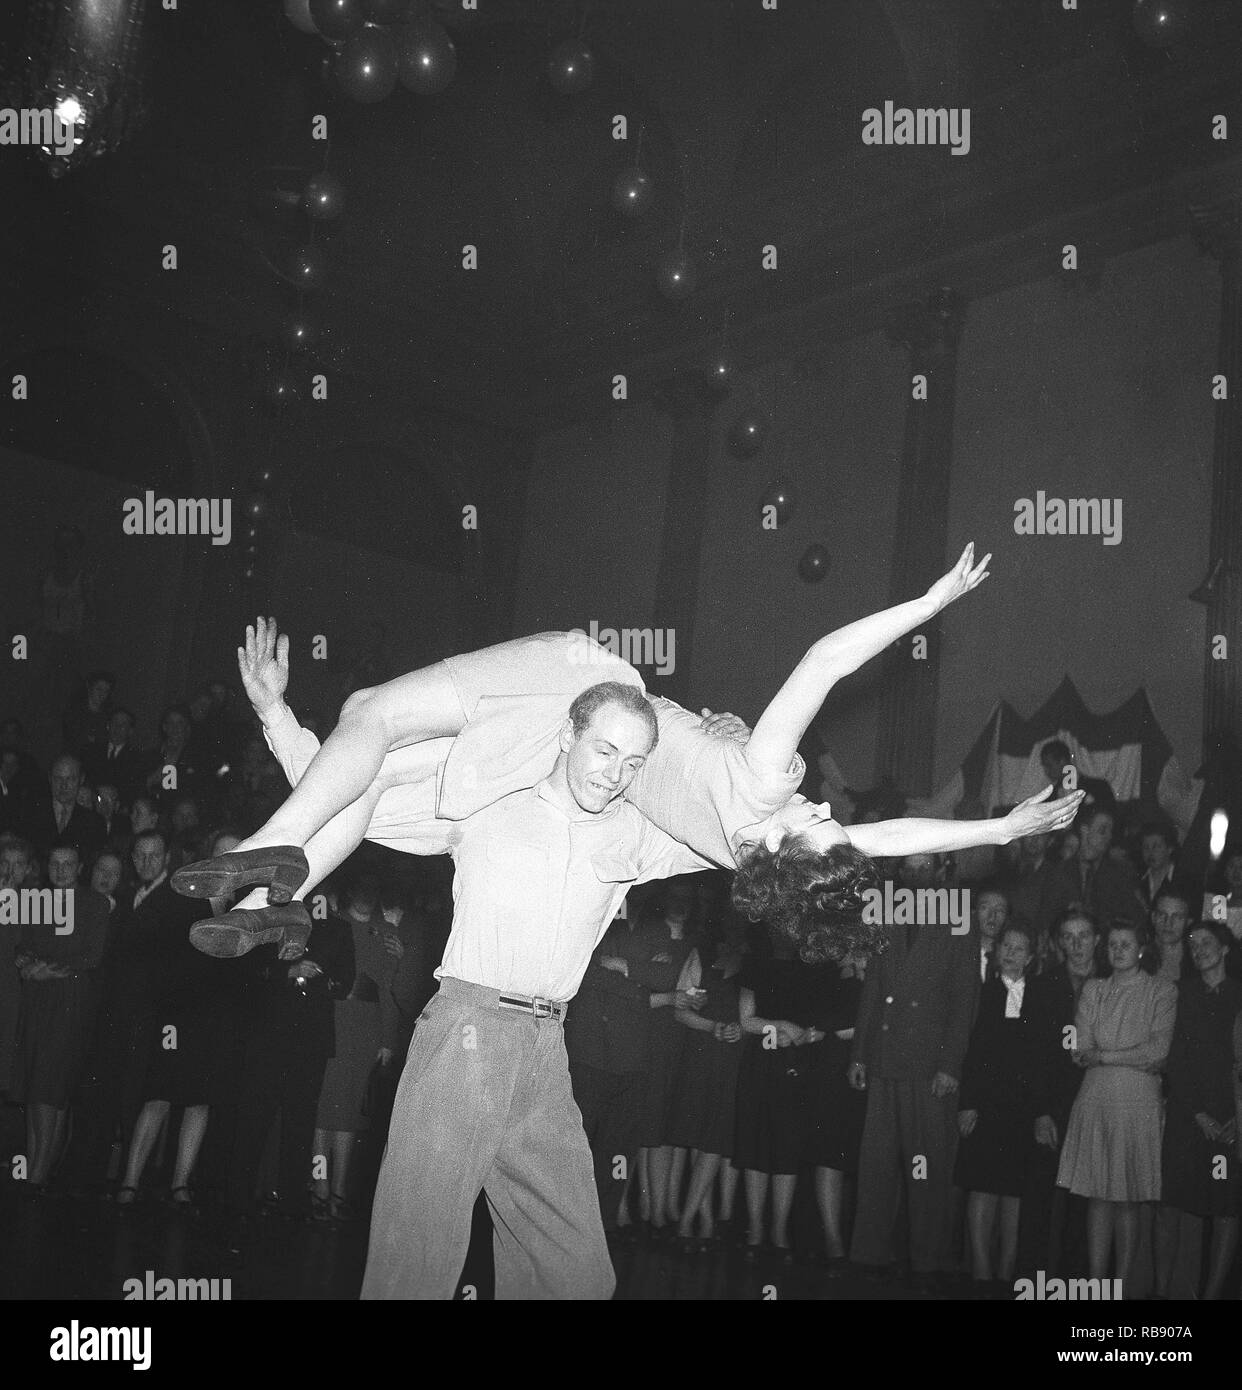 Jitterbug danza. Una danza popularized negli Stati Uniti e la diffusione da parte di soldati americani e i marinai di tutto il mondo durante la Seconda guerra mondiale. Nella foto qui una coppia giovane quando ballare il Jitterbug dance 1948 durante un concorso di danza evento. Foto: Kristoffersson ref AH21-3 Foto Stock